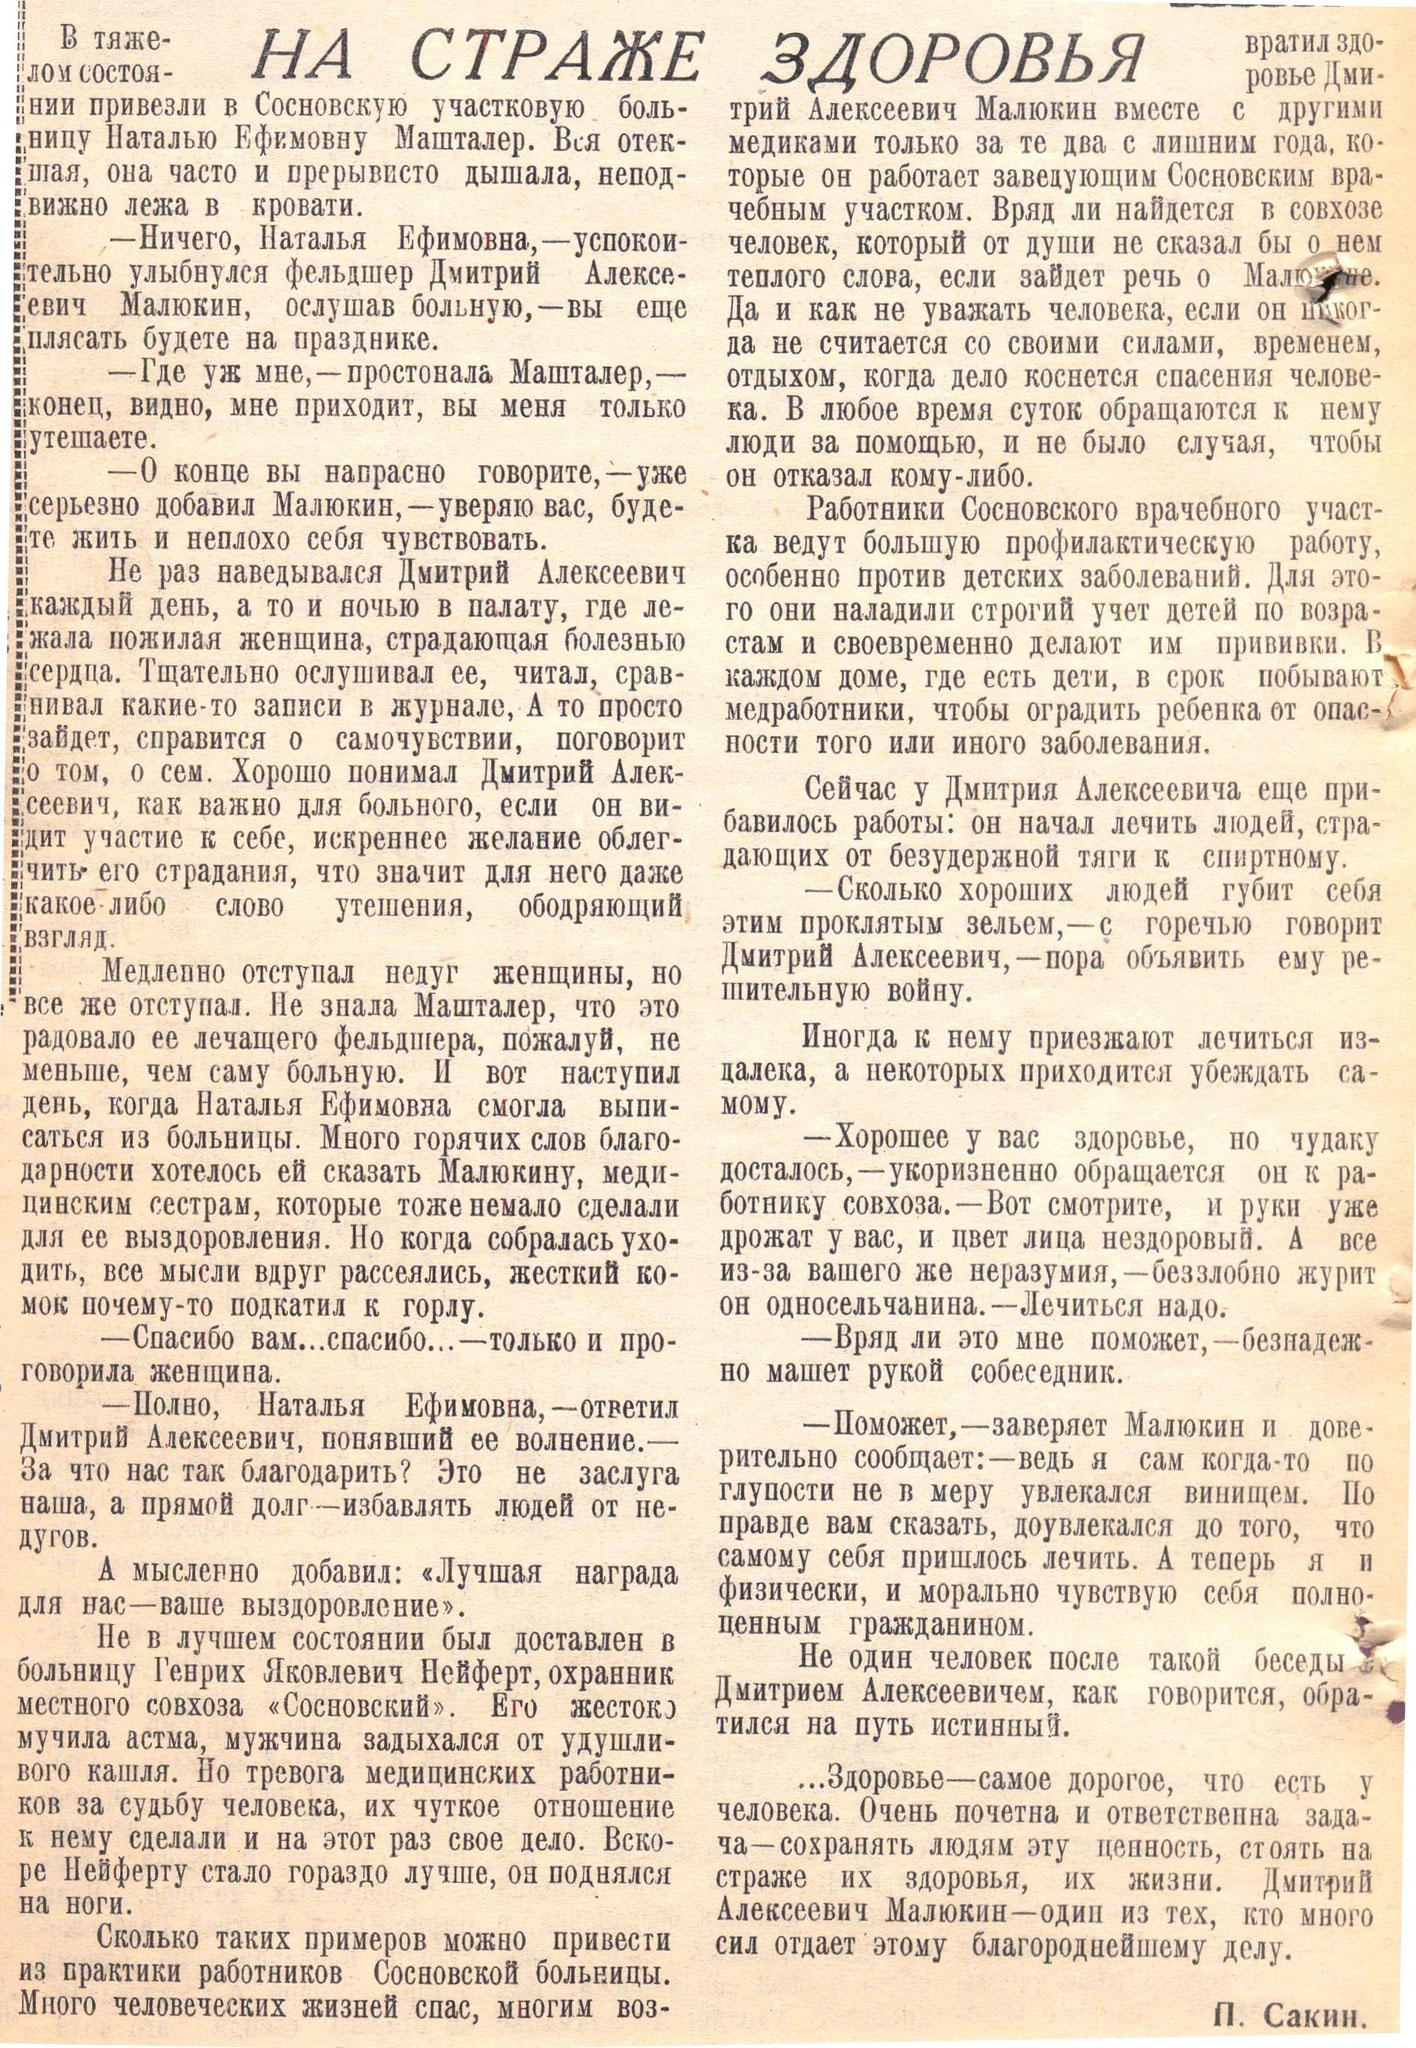 Сакин П. На страже здоровья / П. Сакин // Ленинский путь. - 1961. - 13 декабря. - С. 4